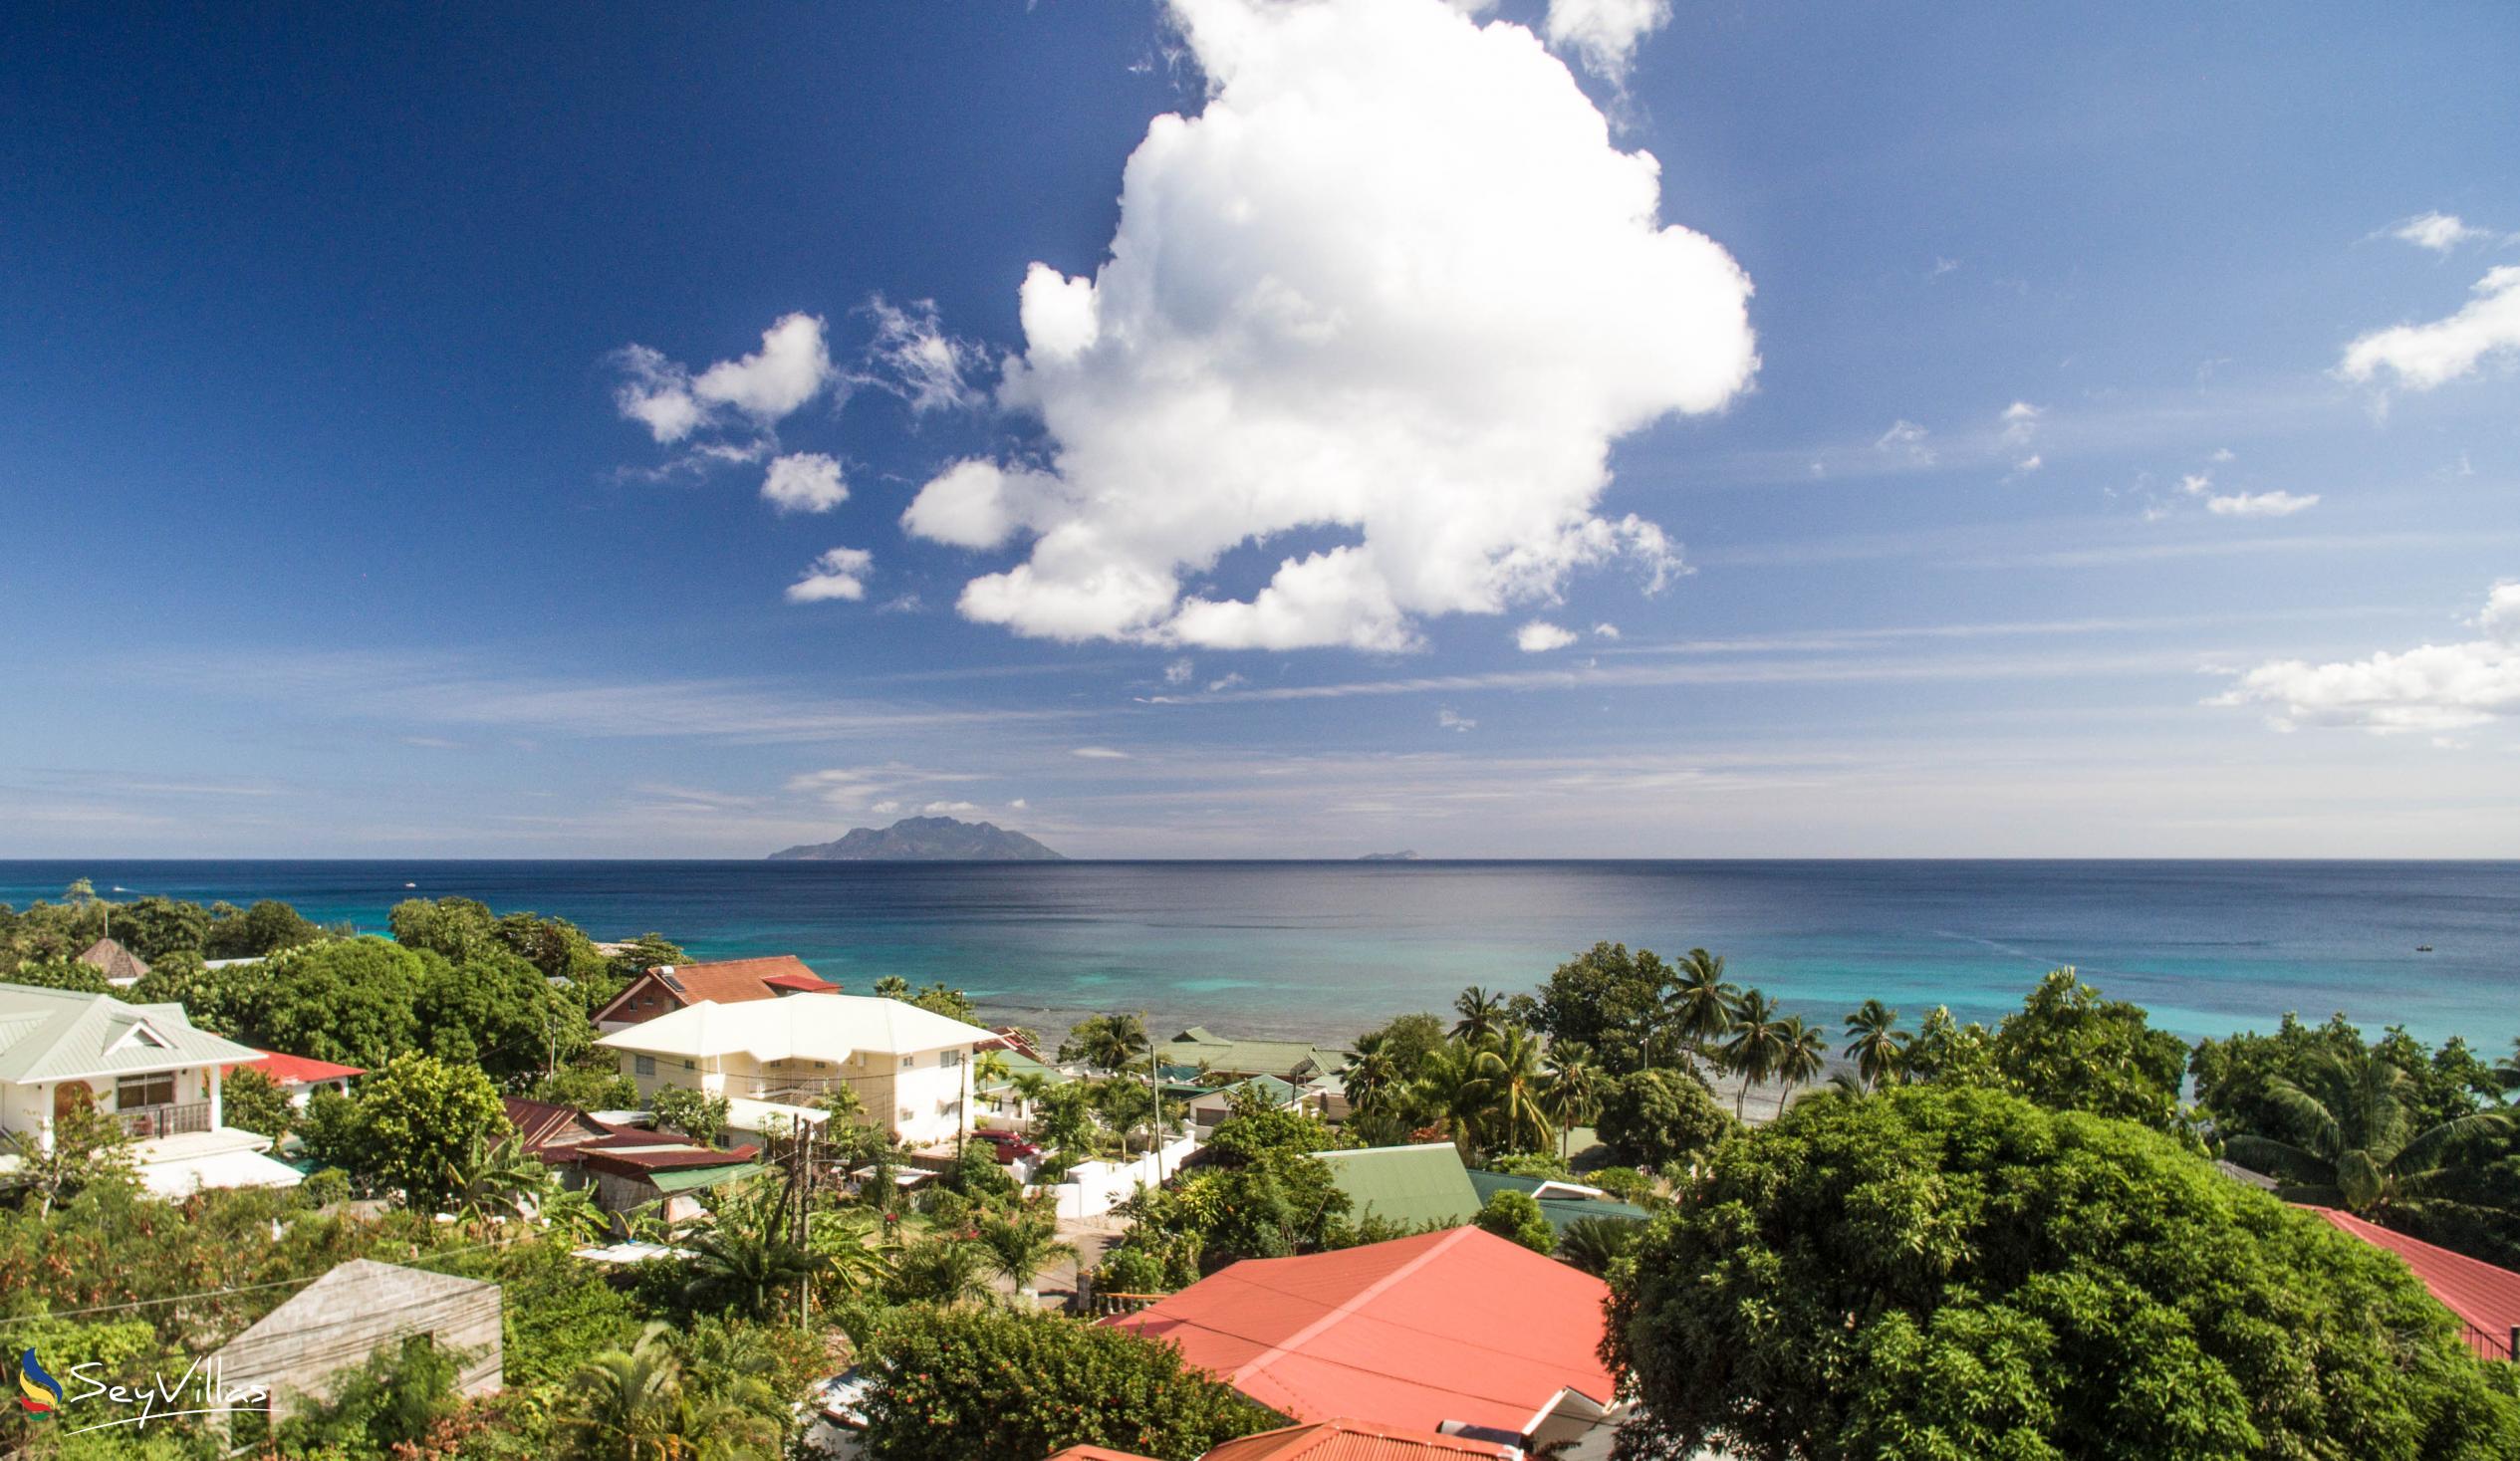 Foto 4: Casadani - Aussenbereich - Mahé (Seychellen)